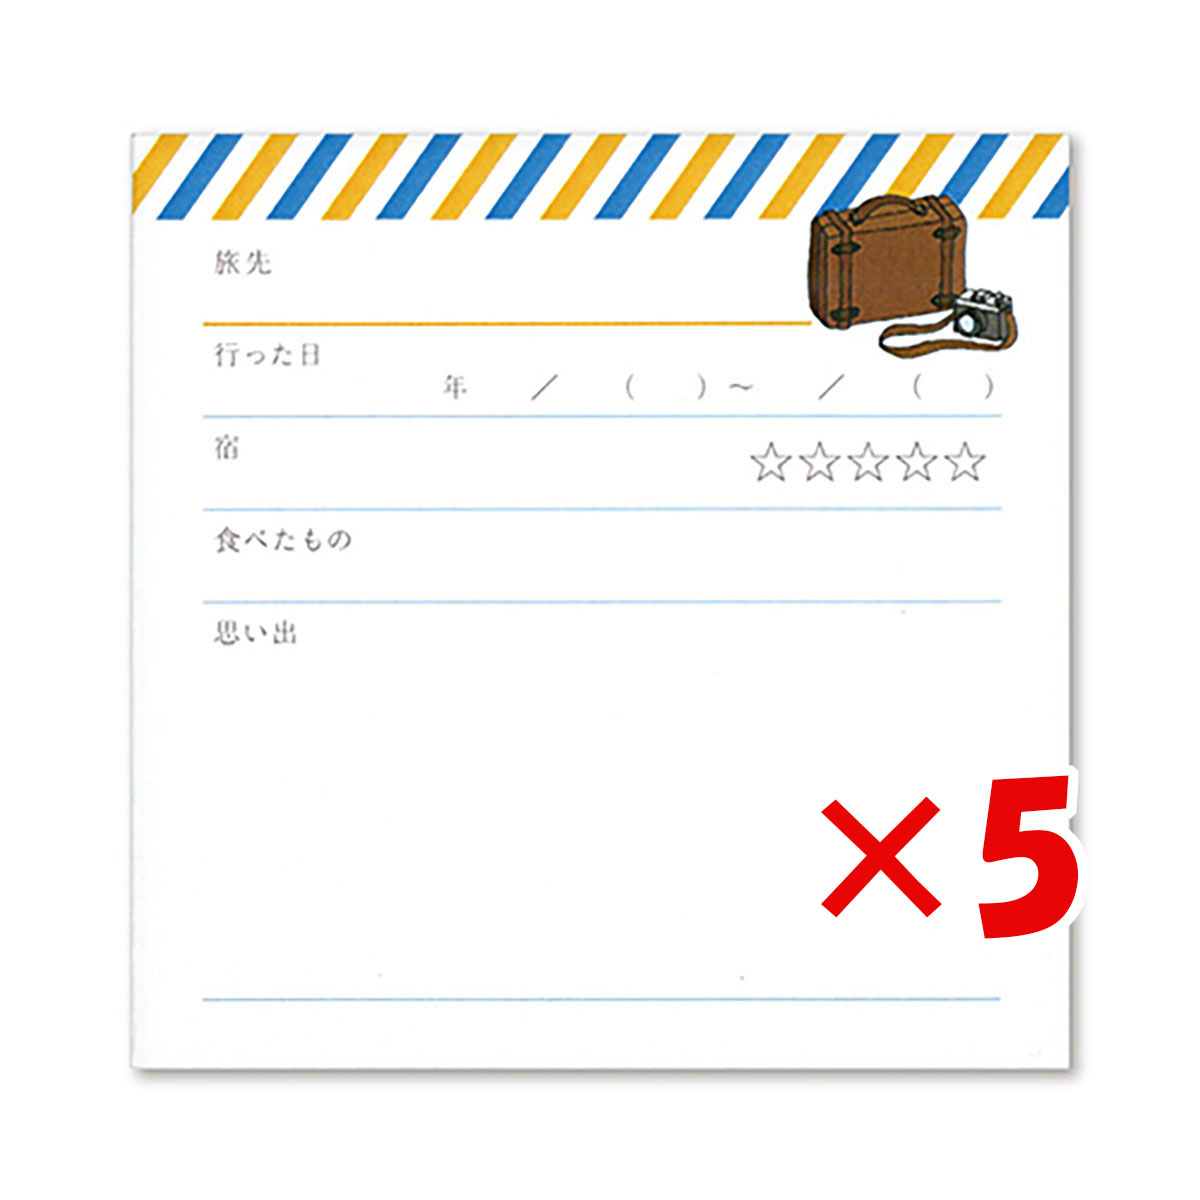  「 山櫻 記録カード memorokuカード 旅 351289 」 